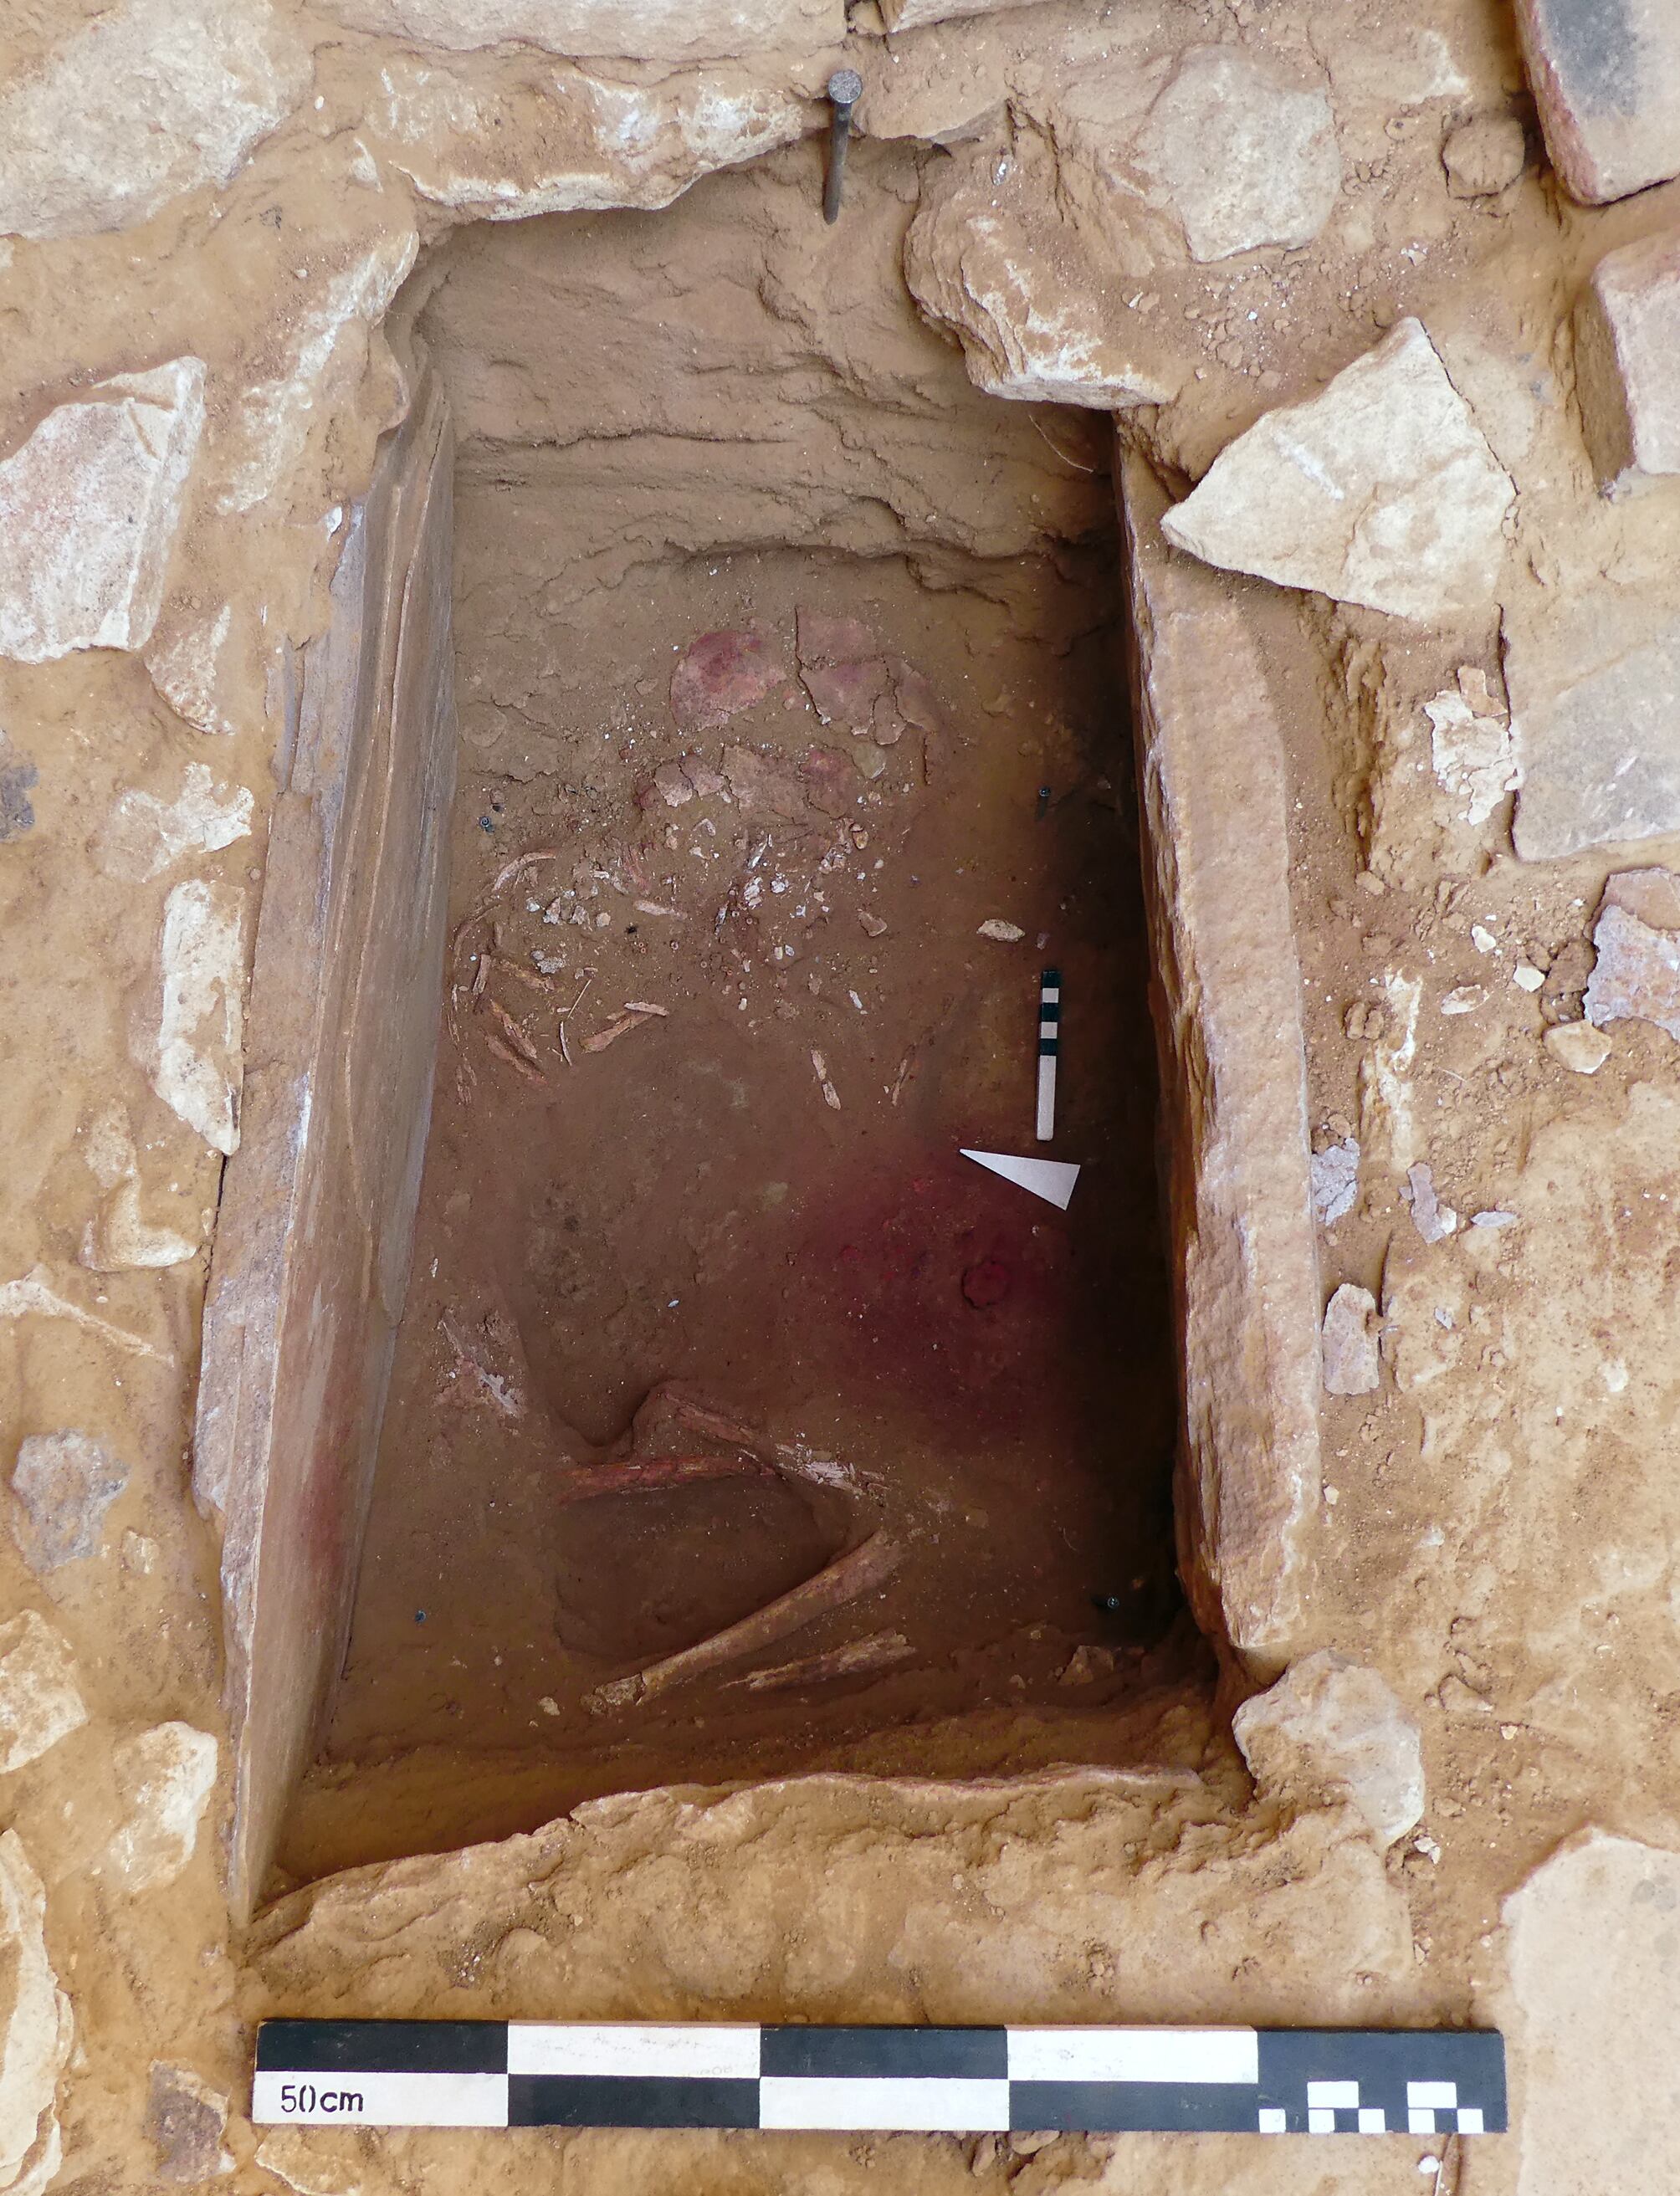 La tumba del menor en Ba’ja, Jordania, donde puede verse el collar desperdigado, al inicio del estudio y el trabajo de recuperación.